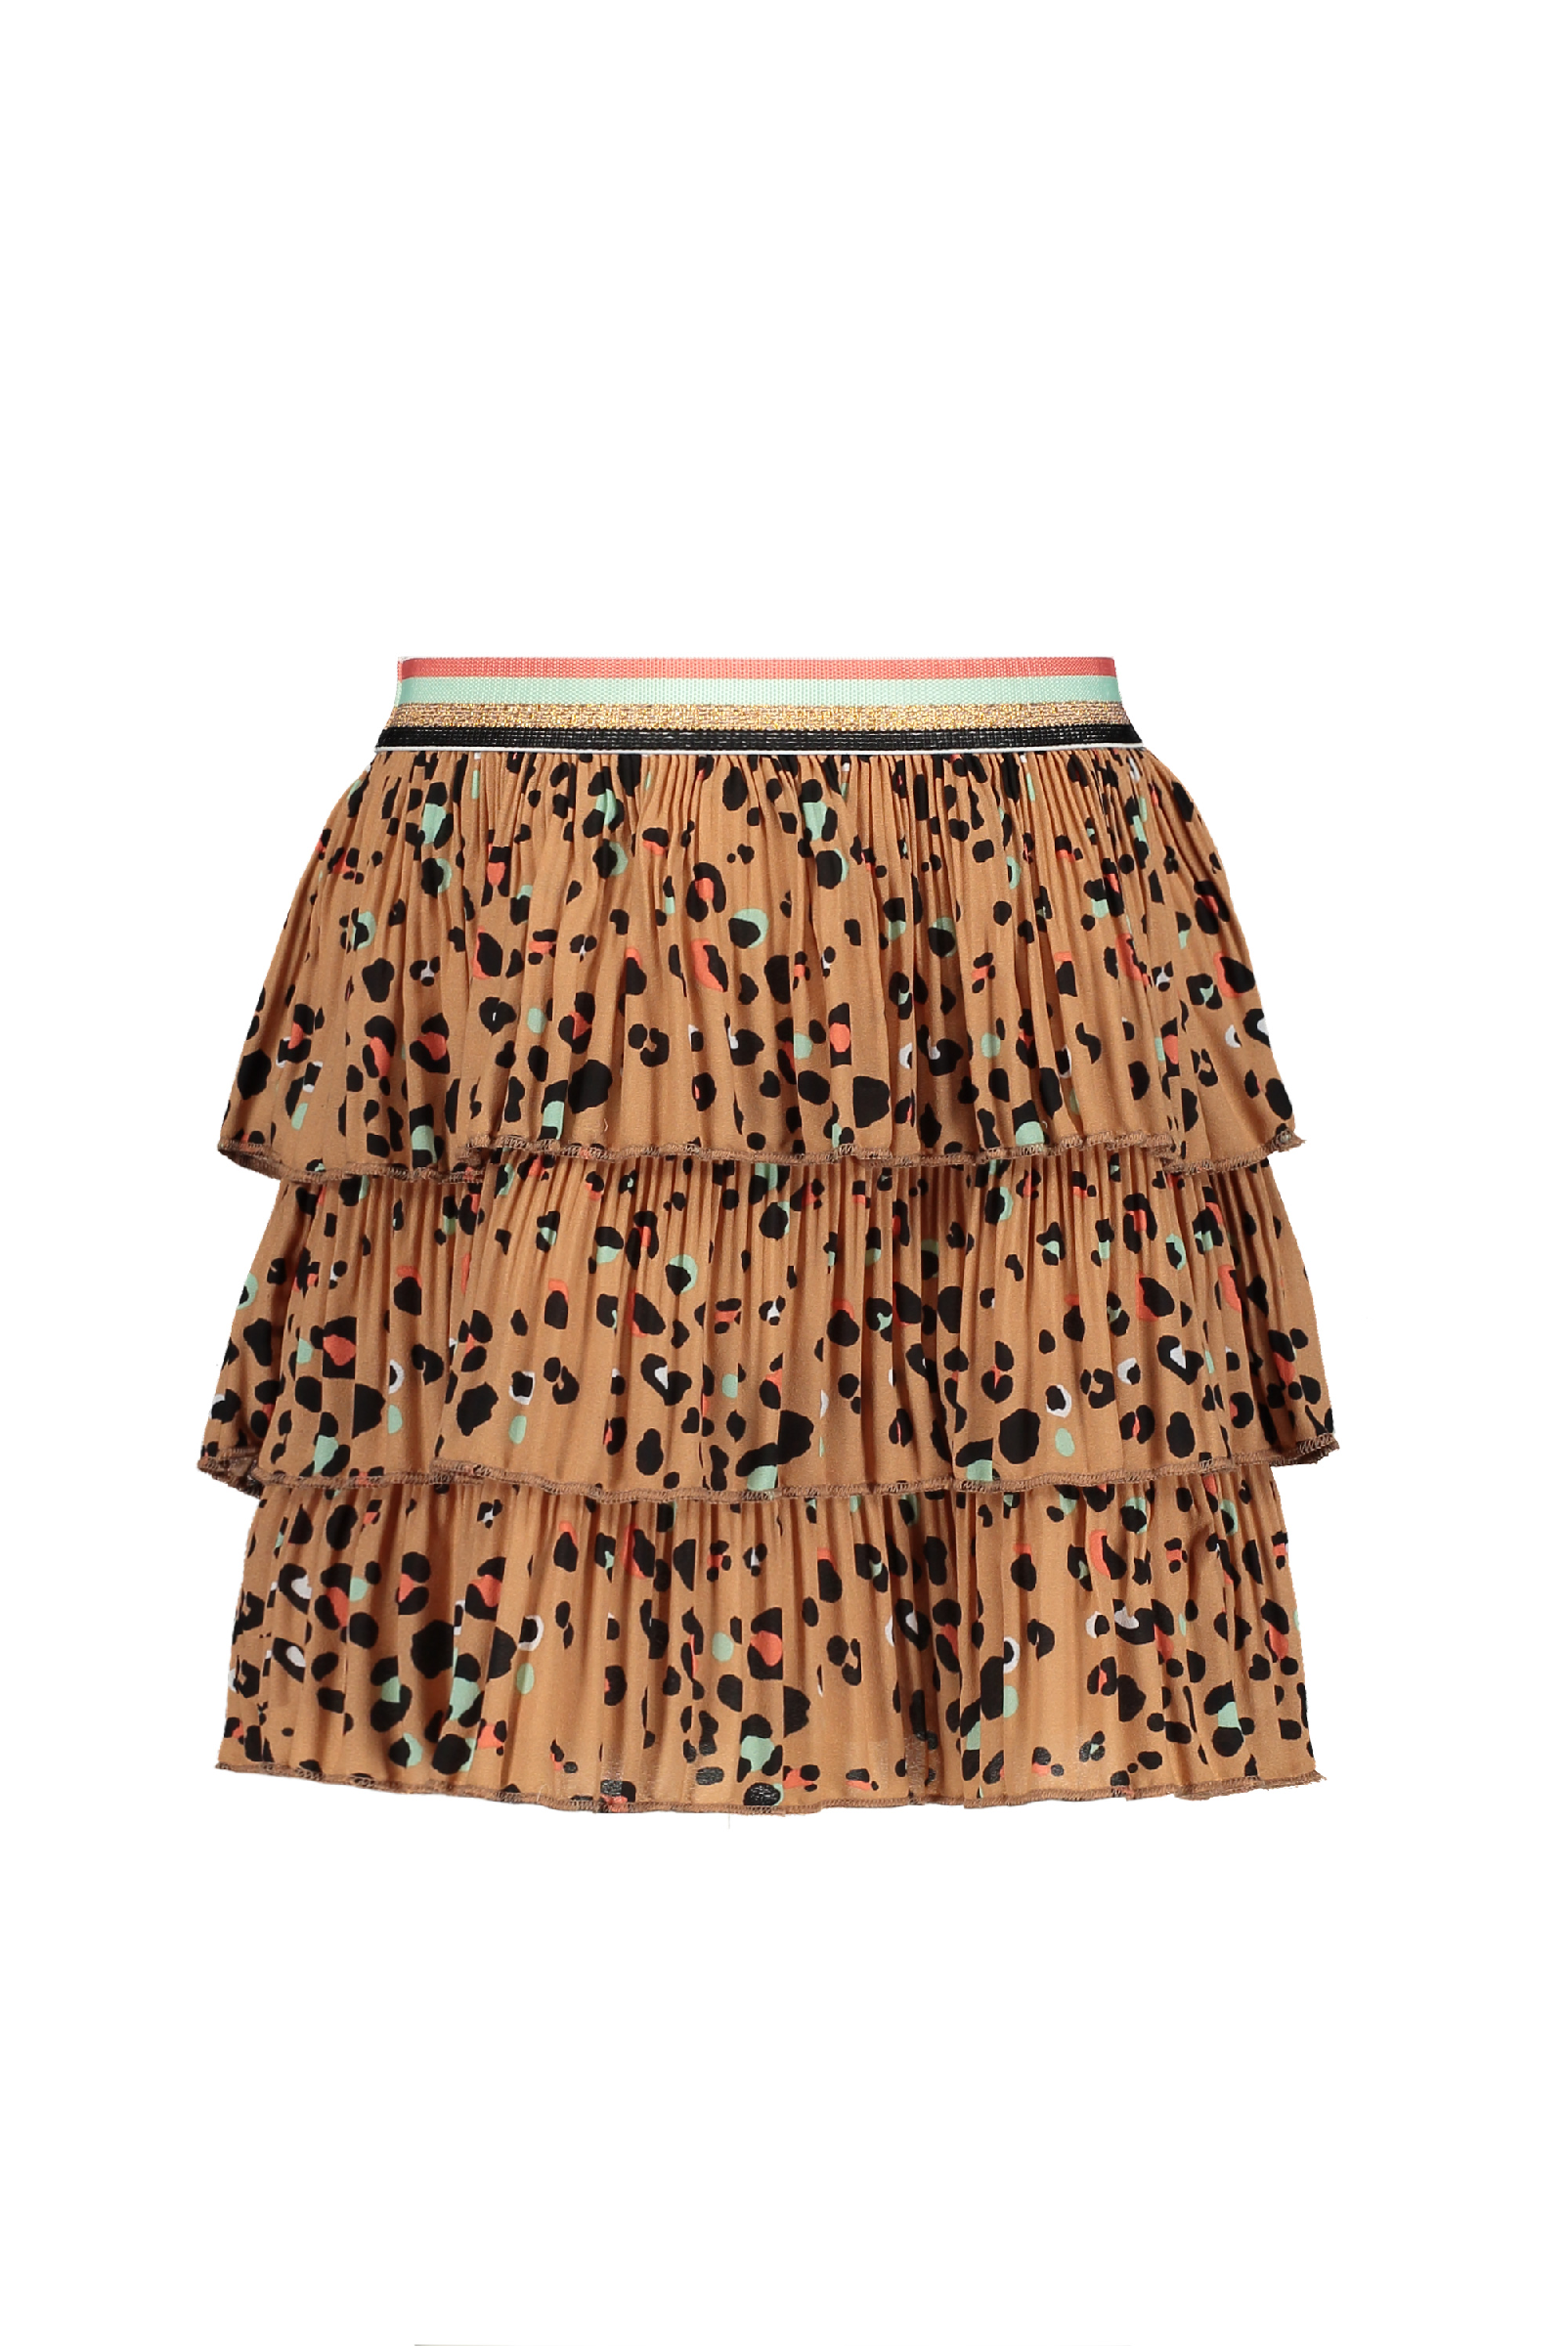 Meisjes Nik B 3 layered skirt van NoNo in de kleur Hazelnut in maat 146, 152.